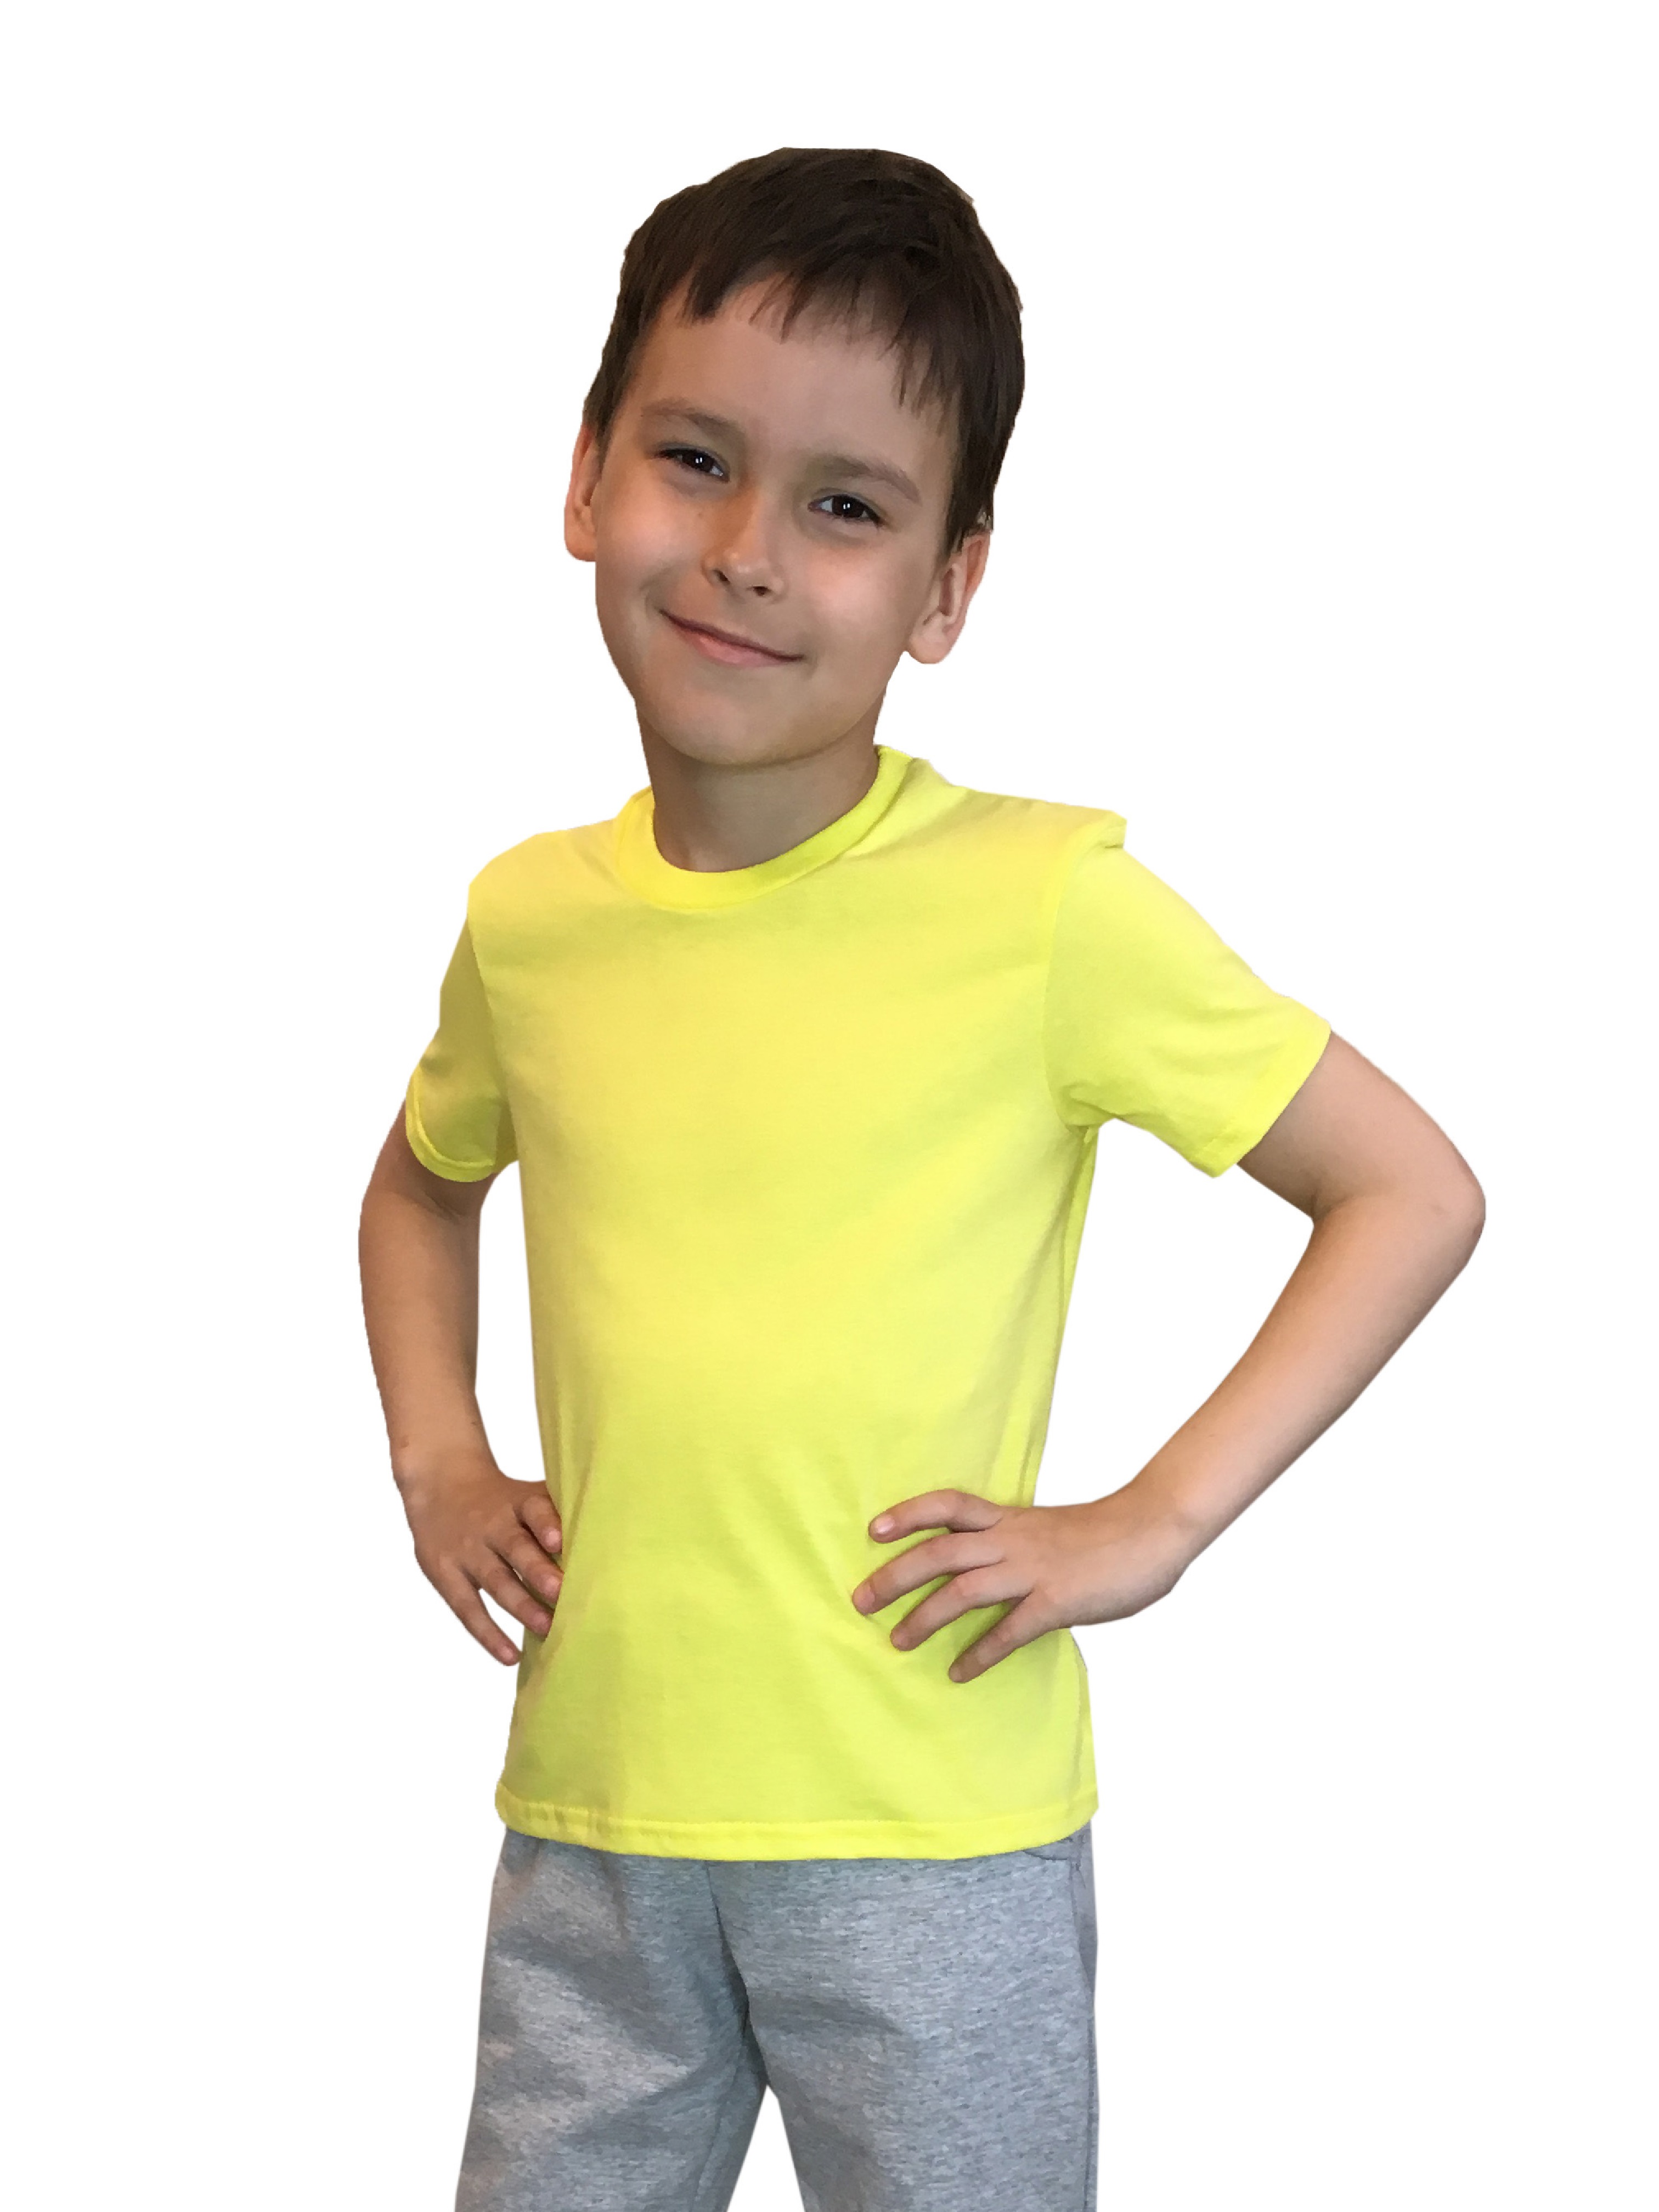 Футболка детская Детрик, желтая размер 116, Ф-1-56